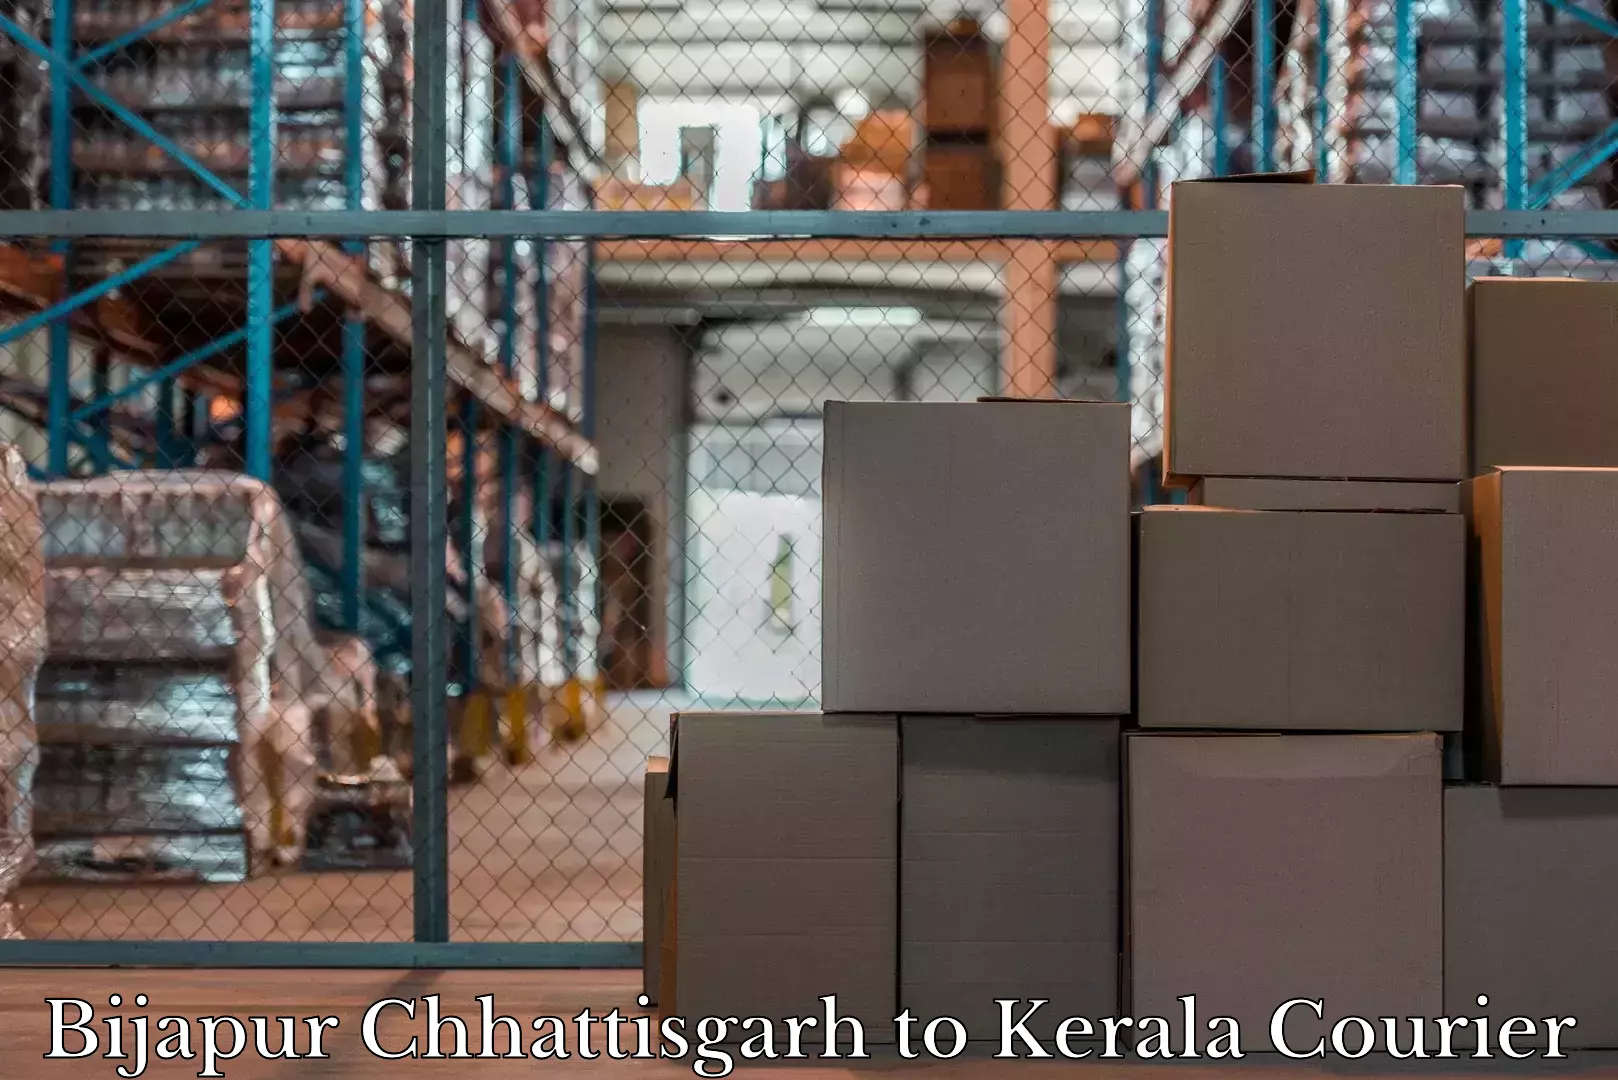 Luggage delivery network Bijapur Chhattisgarh to Mahe